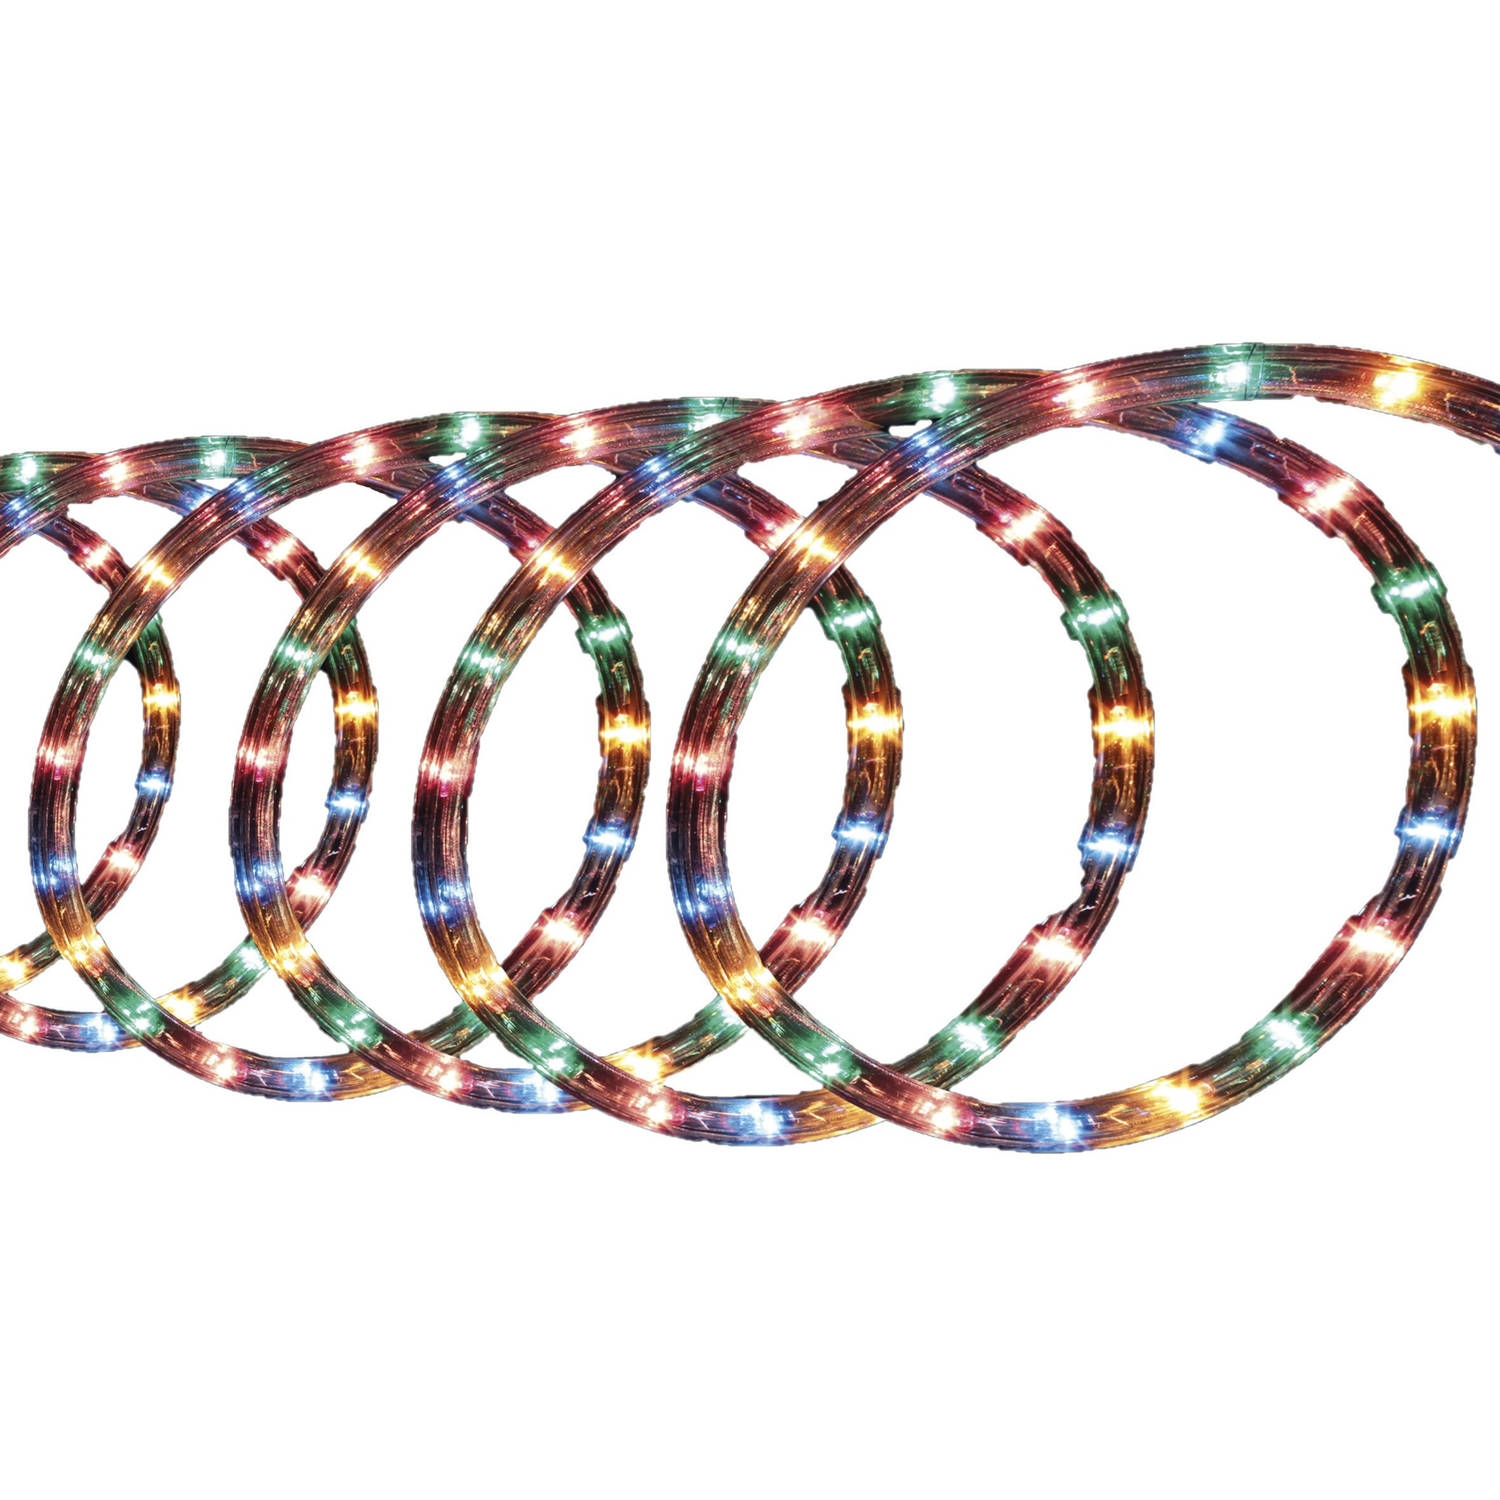 Lichtslang-slangverlichting 10 Meter Met 180 Lampjes Gekleurd Lichtslangen